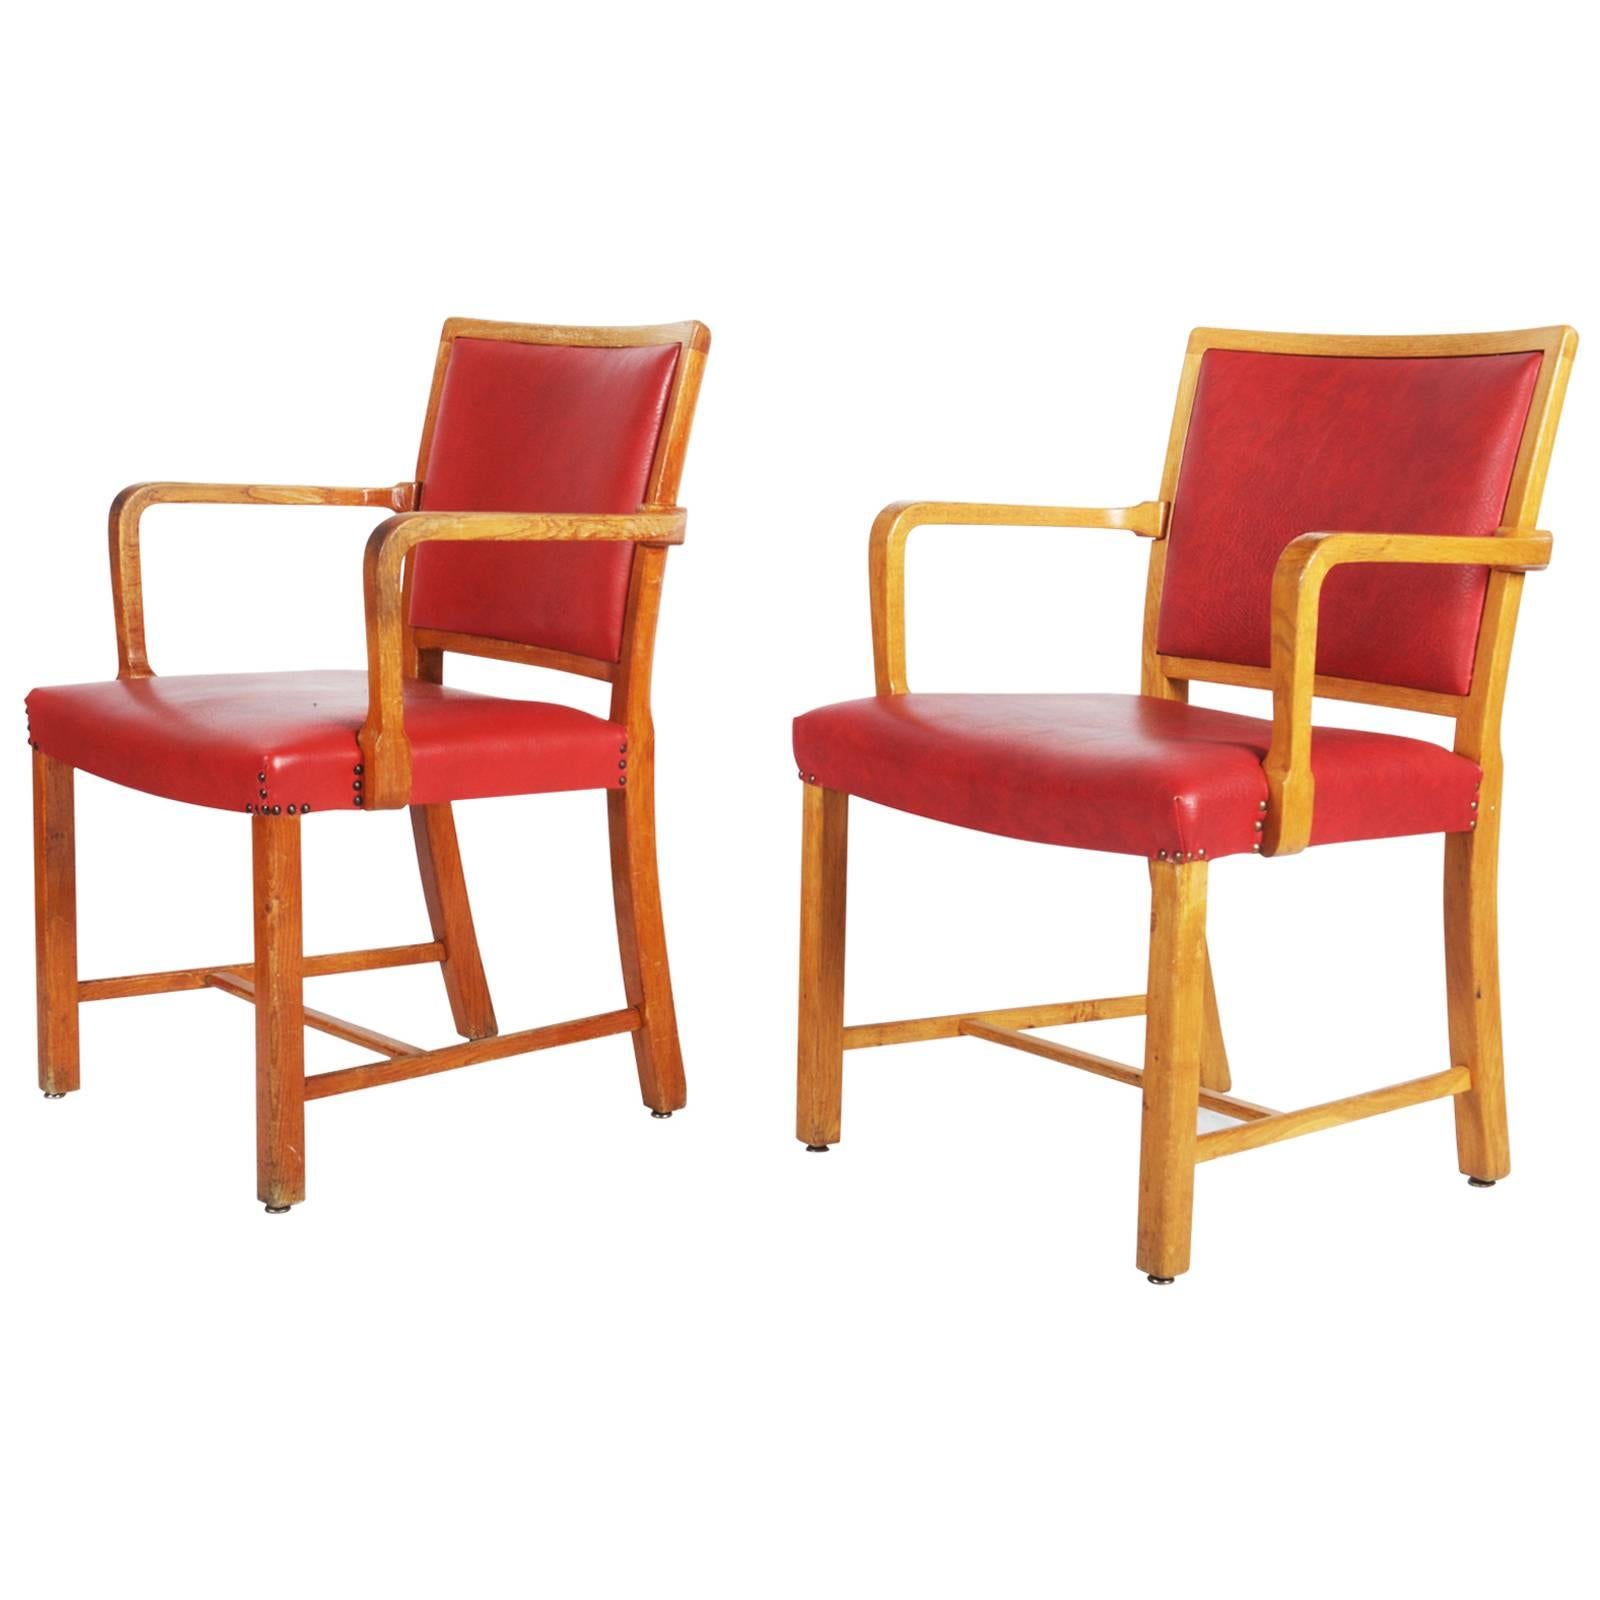 Äußerst seltene Sessel, Gestell aus lackierter Eiche und mit rotem Kunstleder gepolstert. Charakter als Teil der ursprünglichen Einrichtung des Staatlichen Krankenhauses in Sønderborg, wie Mogens Koch 1936 zeichnete.
Sehr gebraucht und müssen